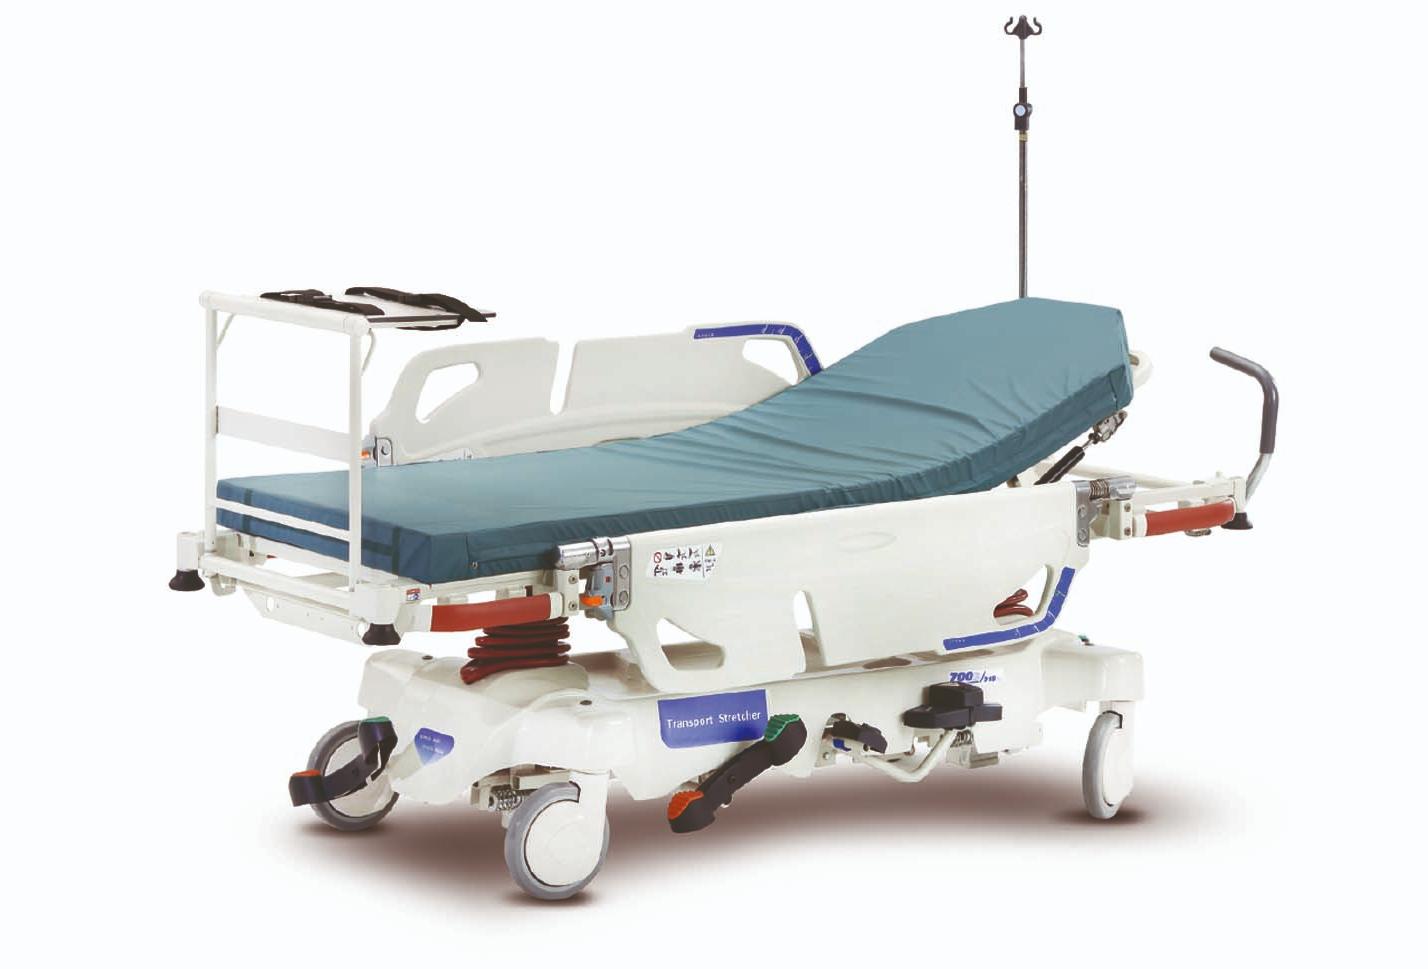 Тележка медицинская для перевозки пациентов (каталка) BL-PC-III 6, 4 функции, гидравлическая, с полкой для оборудования и инструментов